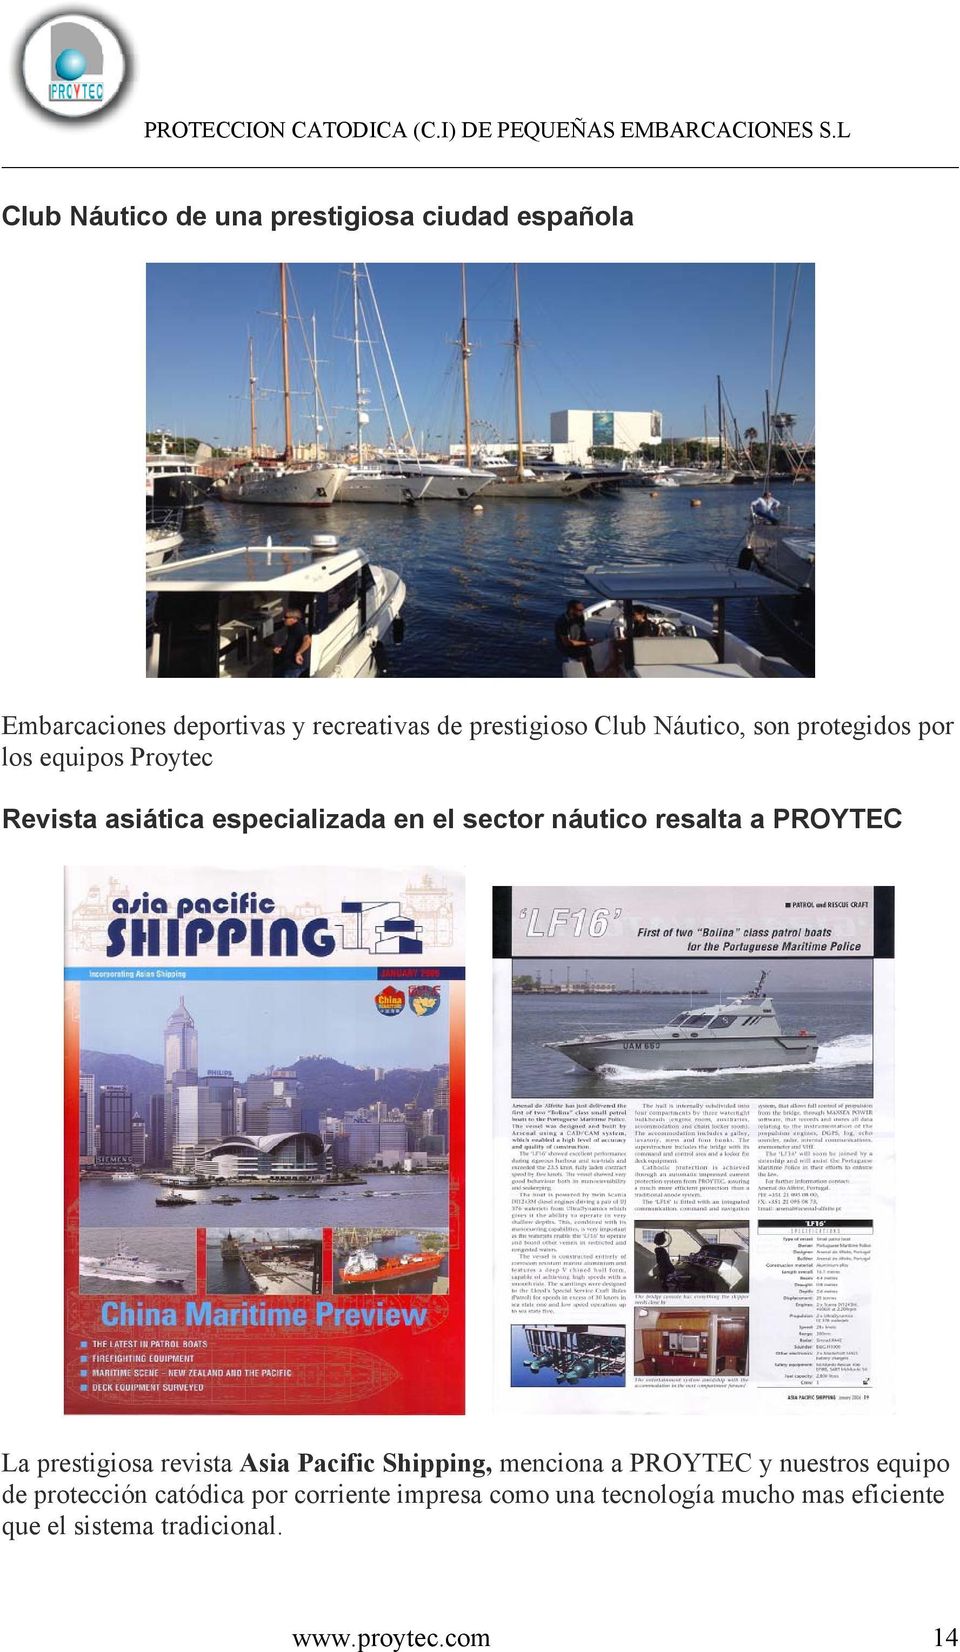 PROYTEC La prestigiosa revista Asia Pacific Shipping, menciona a PROYTEC y nuestros equipo de protección